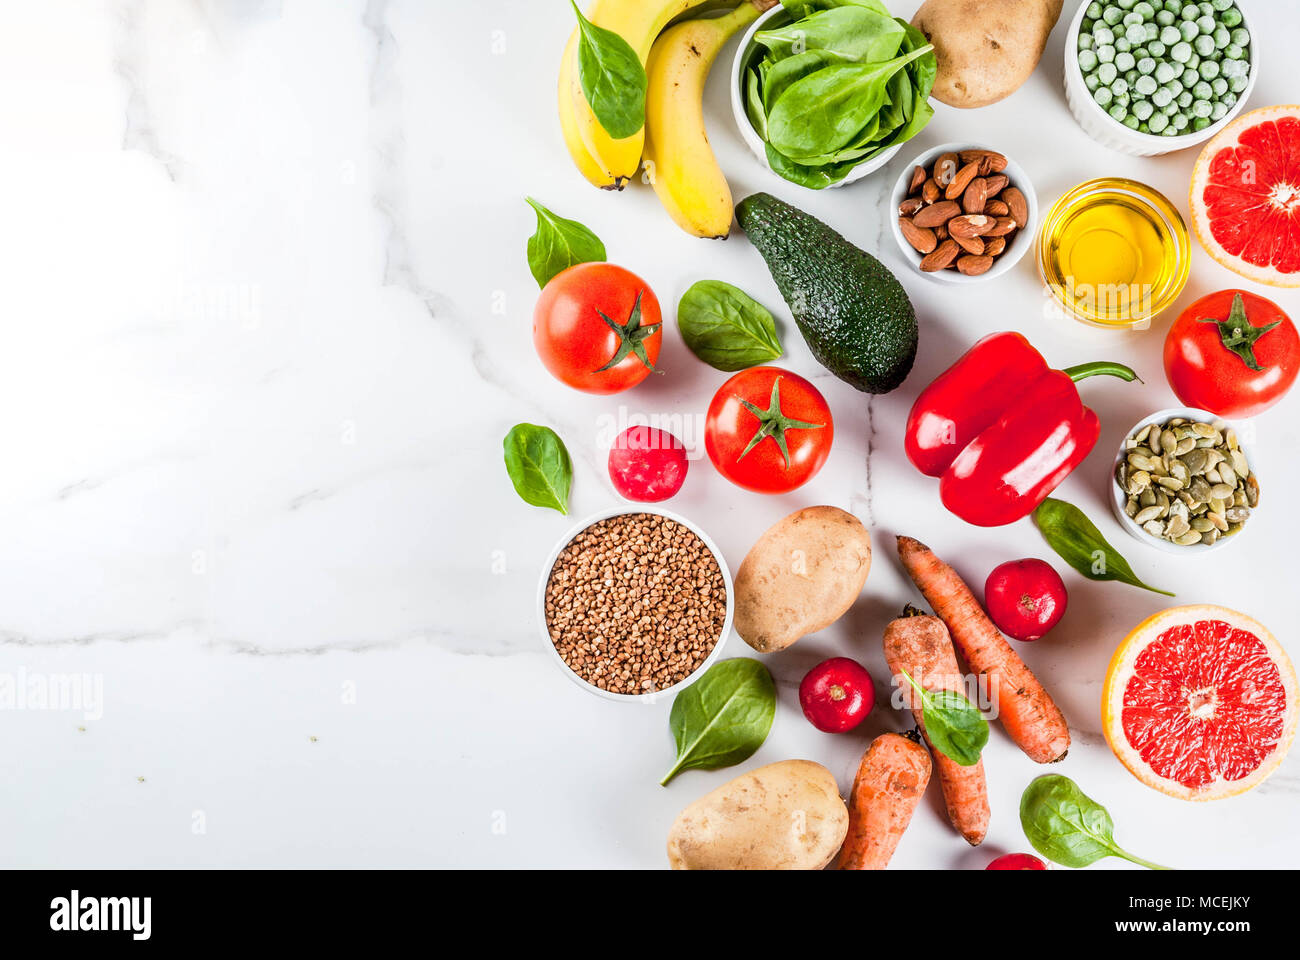 Gesundes essen Hintergrund, trendige Basische Ernährung Produkte - Obst, Gemüse, Getreide, Nüsse. Öle, weißem Marmor Hintergrund oben Stockfoto